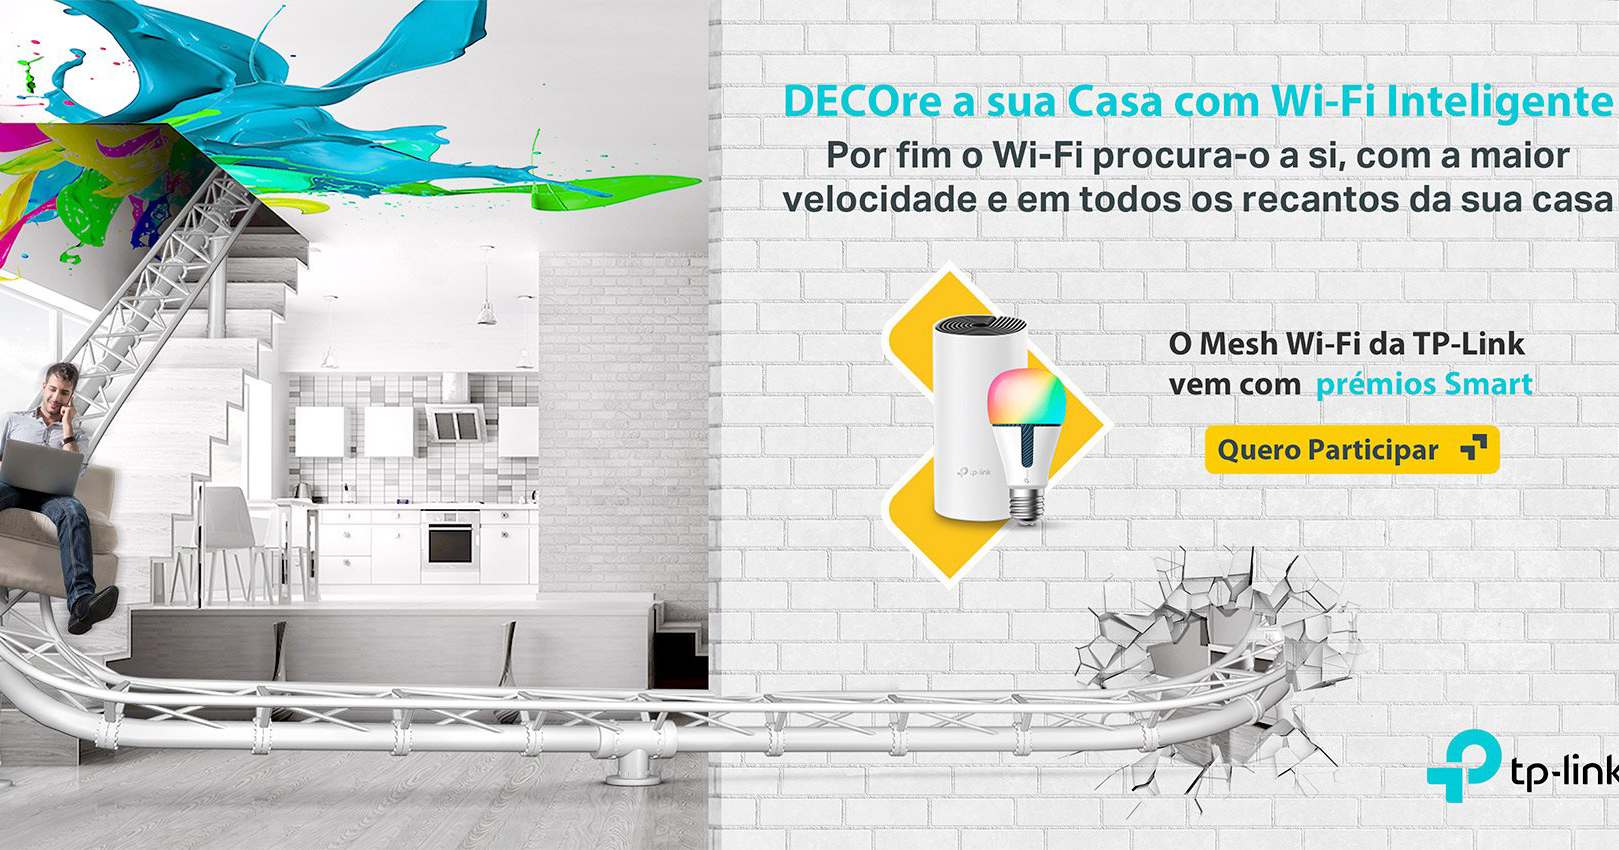 TP-Link anuncia campanha “DECOre a sua casa com Wi-Fi inteligente”